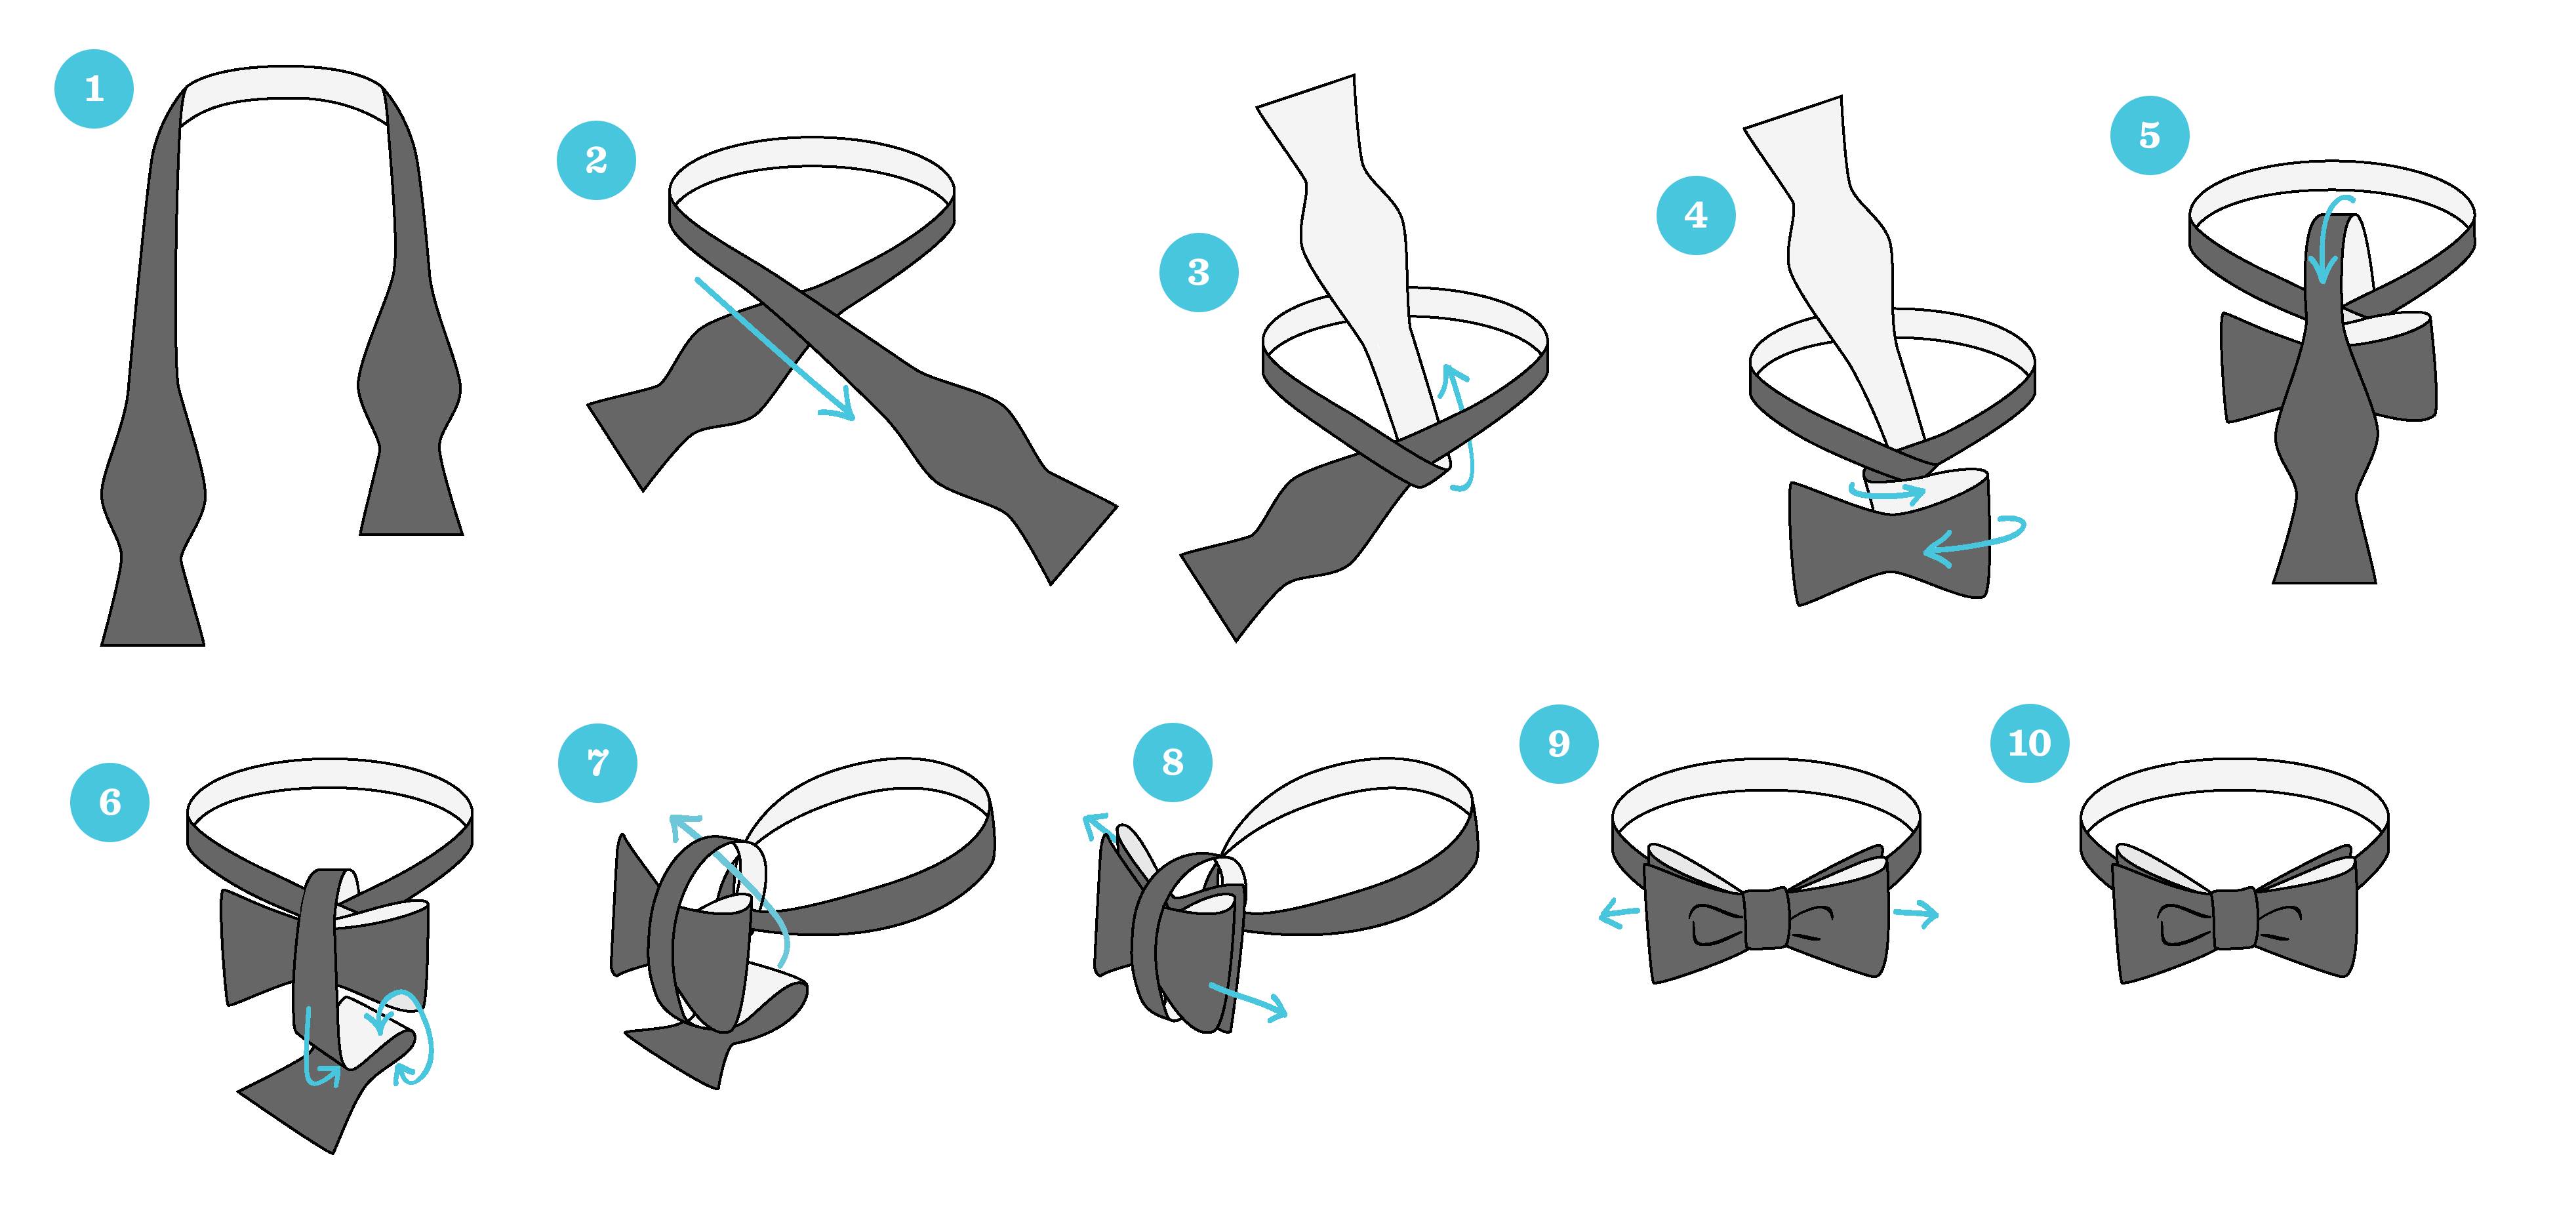 Как завязать тонкий галстук — 4 схемы и пошаговая инструкция